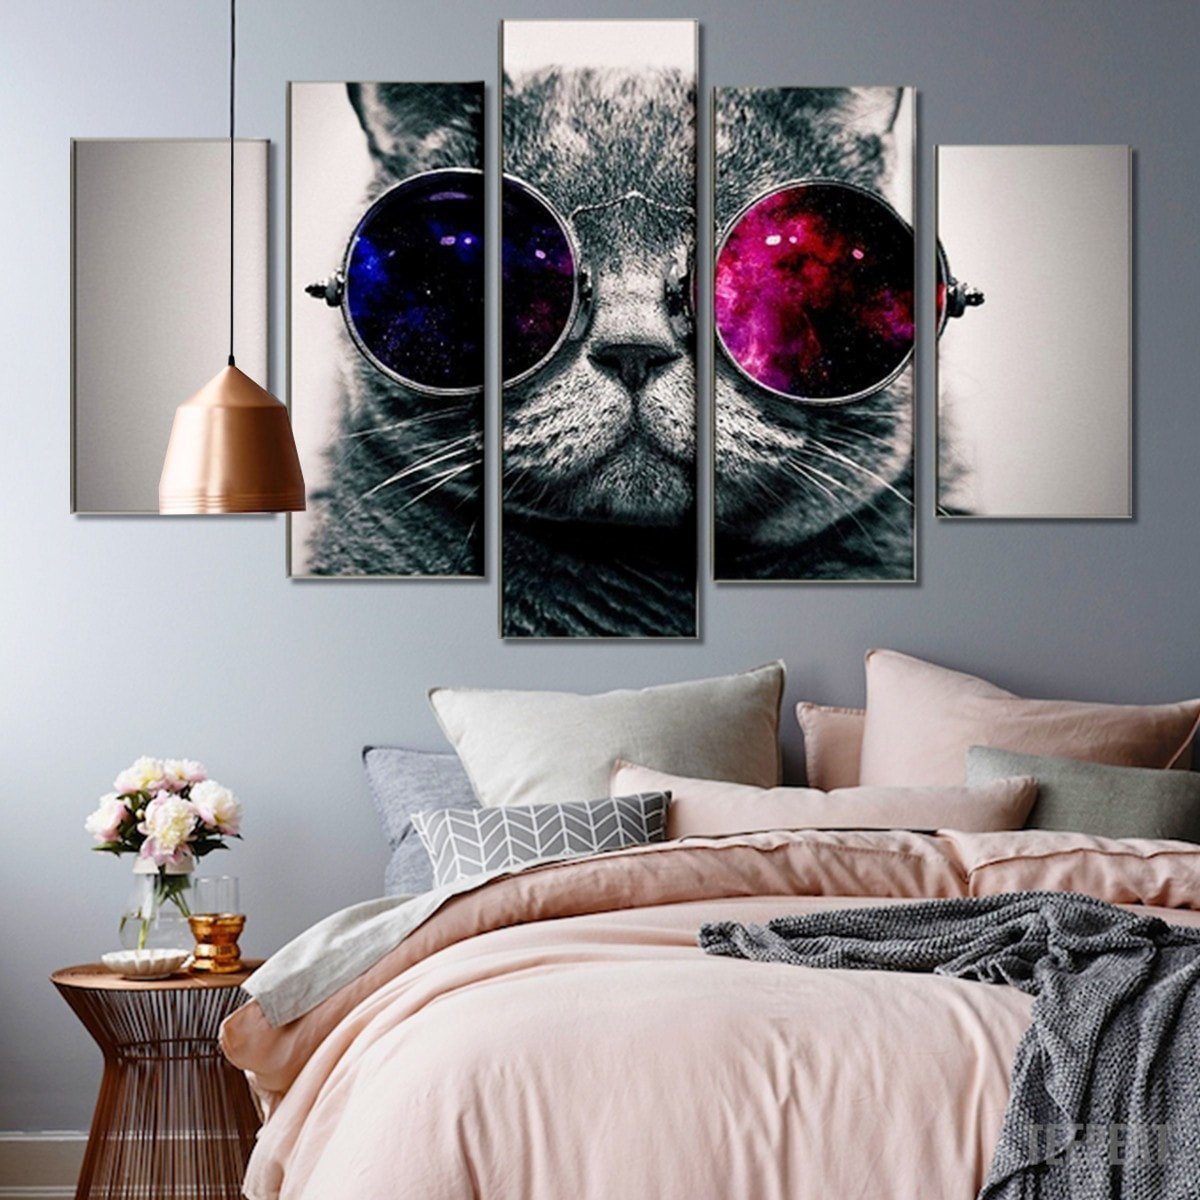 tableau cat with glasses animal 5 pices impression sur toile peinture art pour la dcoration intrieuregkdbg